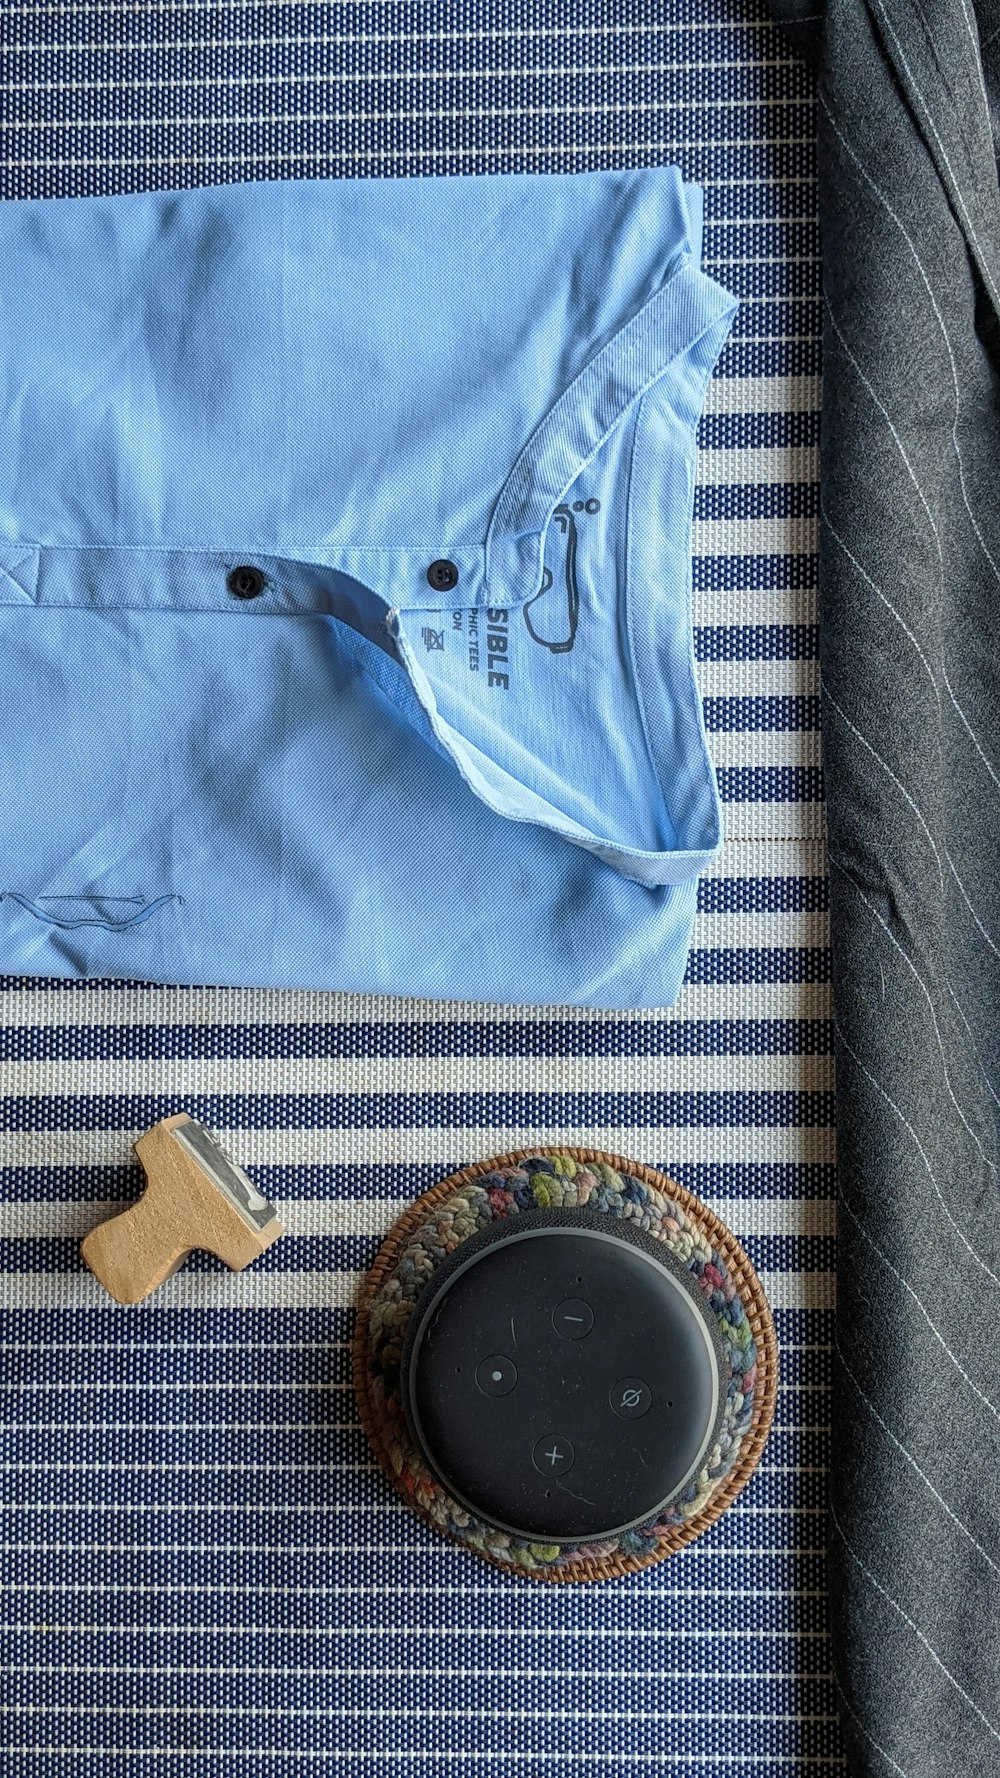 a blue shirt and a pocket watch